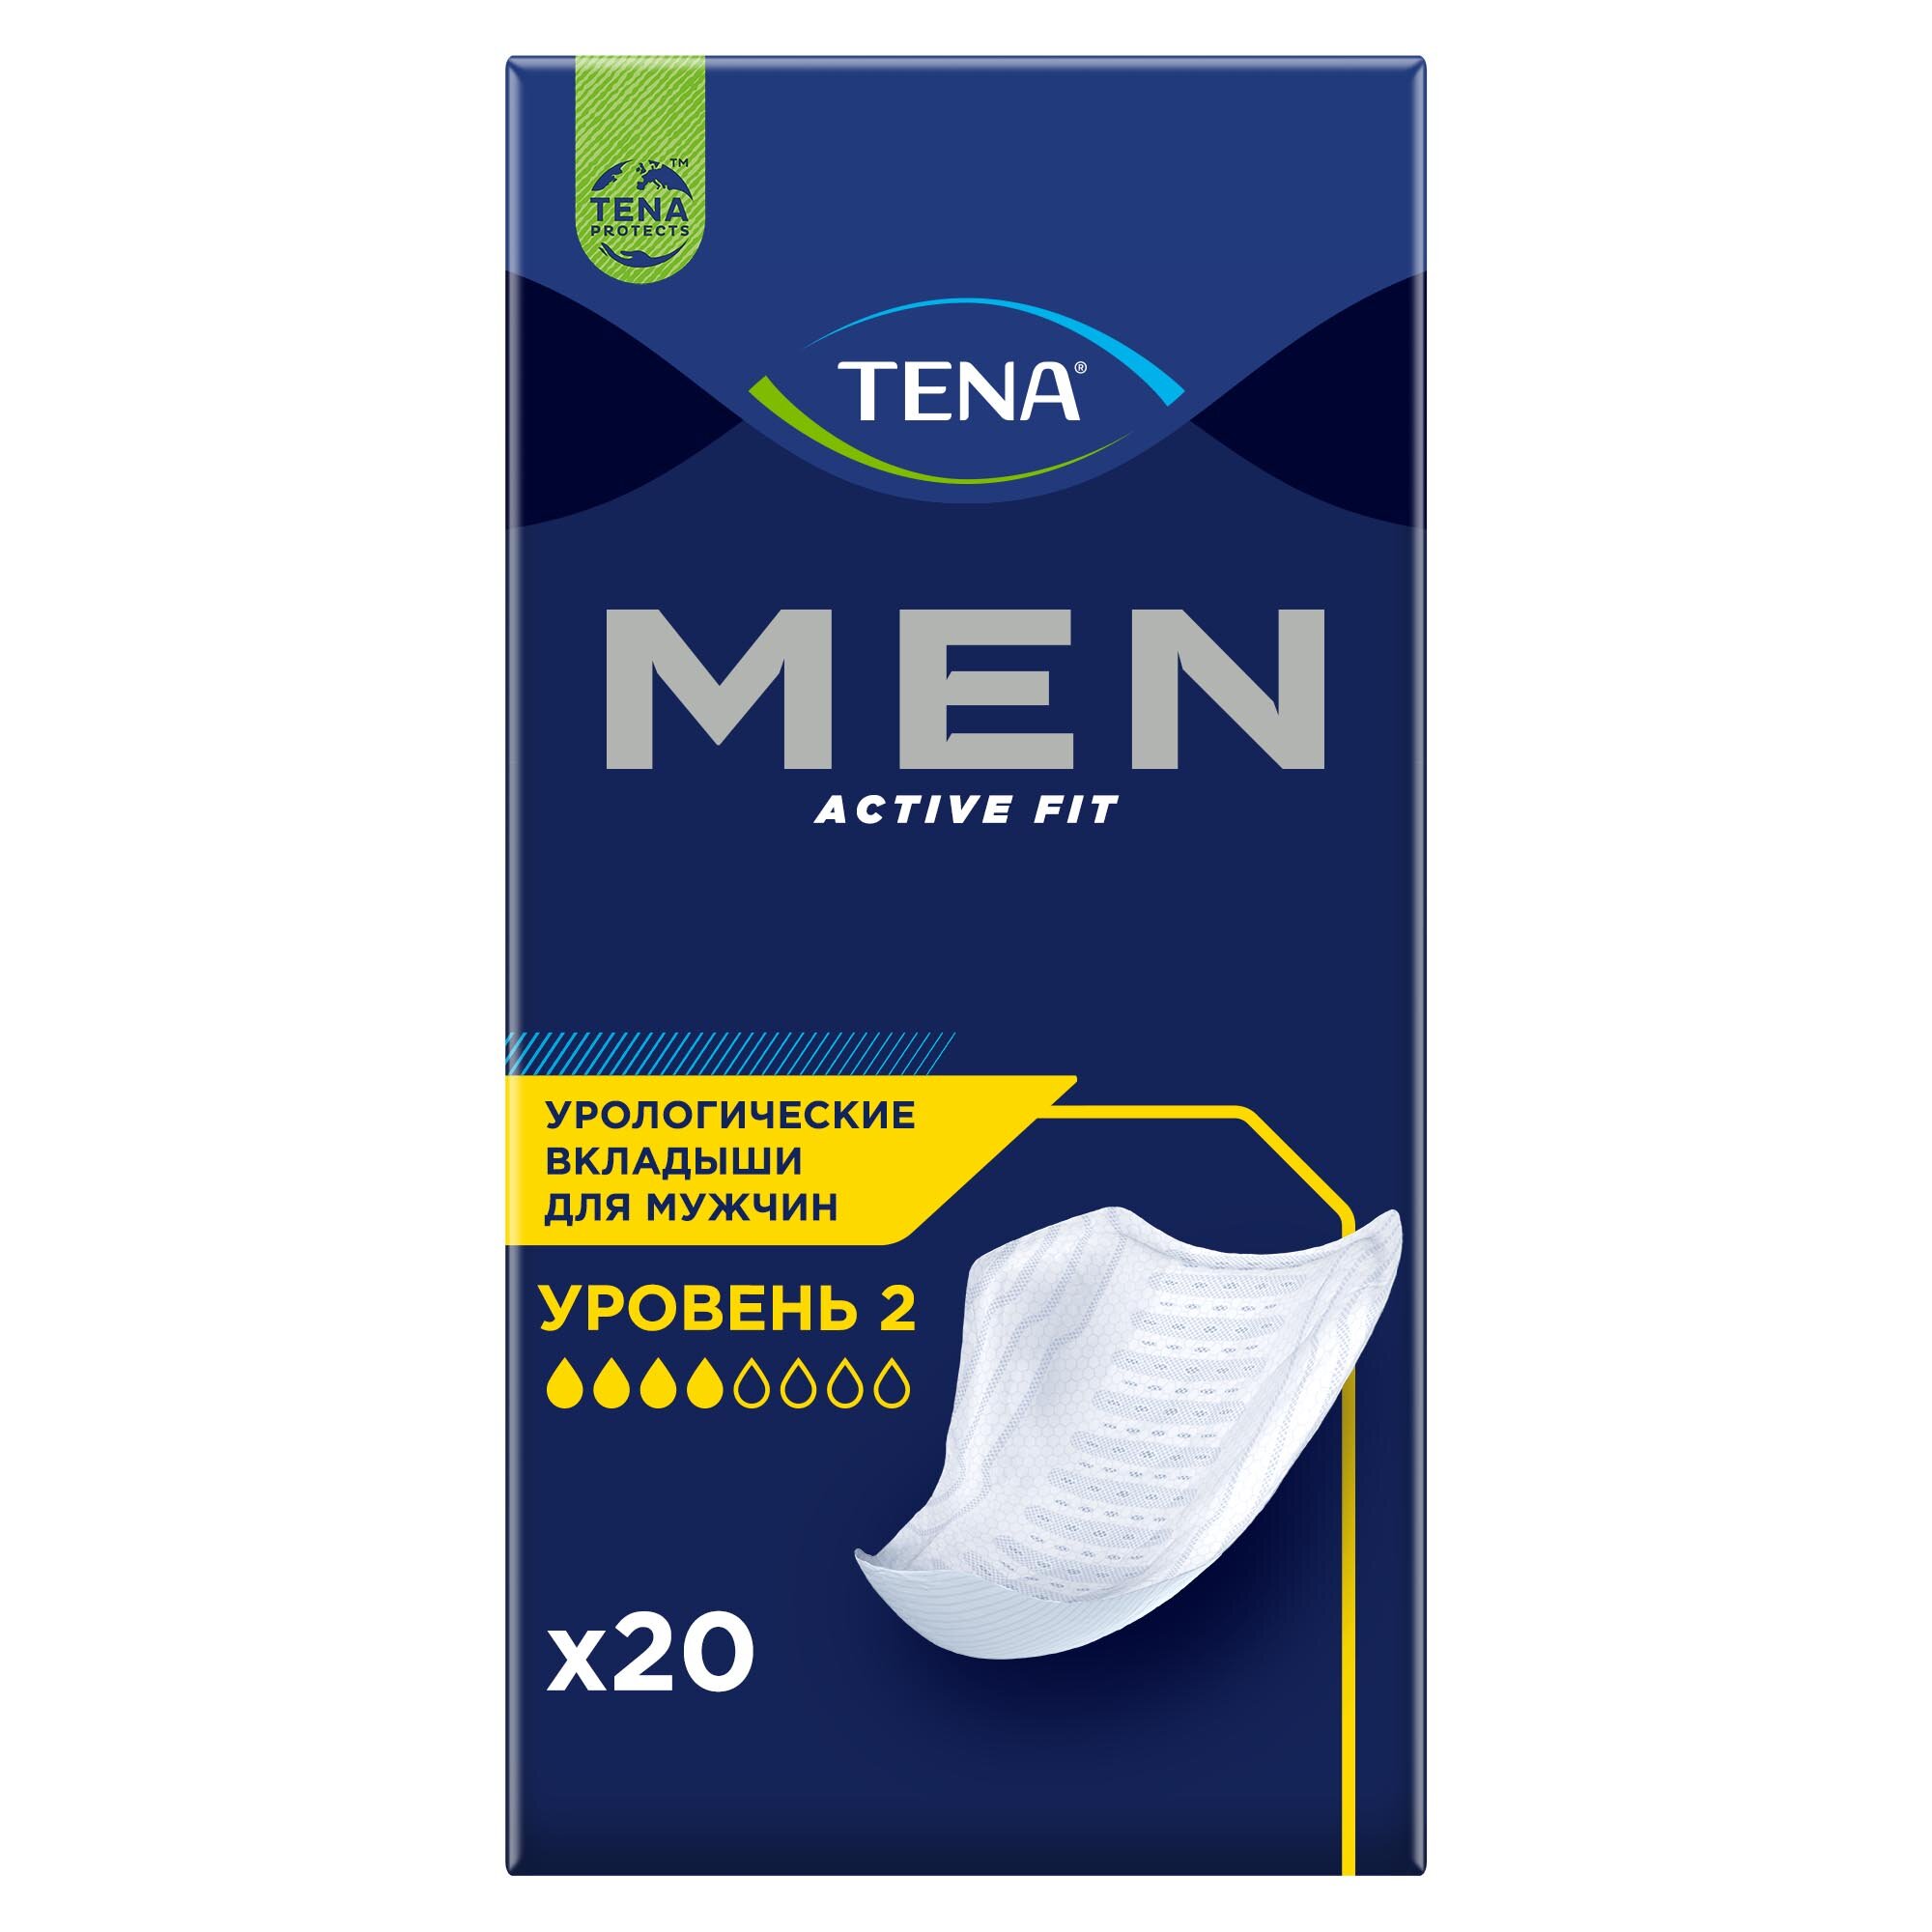 Урологические прокладки TENA Men Active Fit 2 уровень, 4 капель, 20 шт.